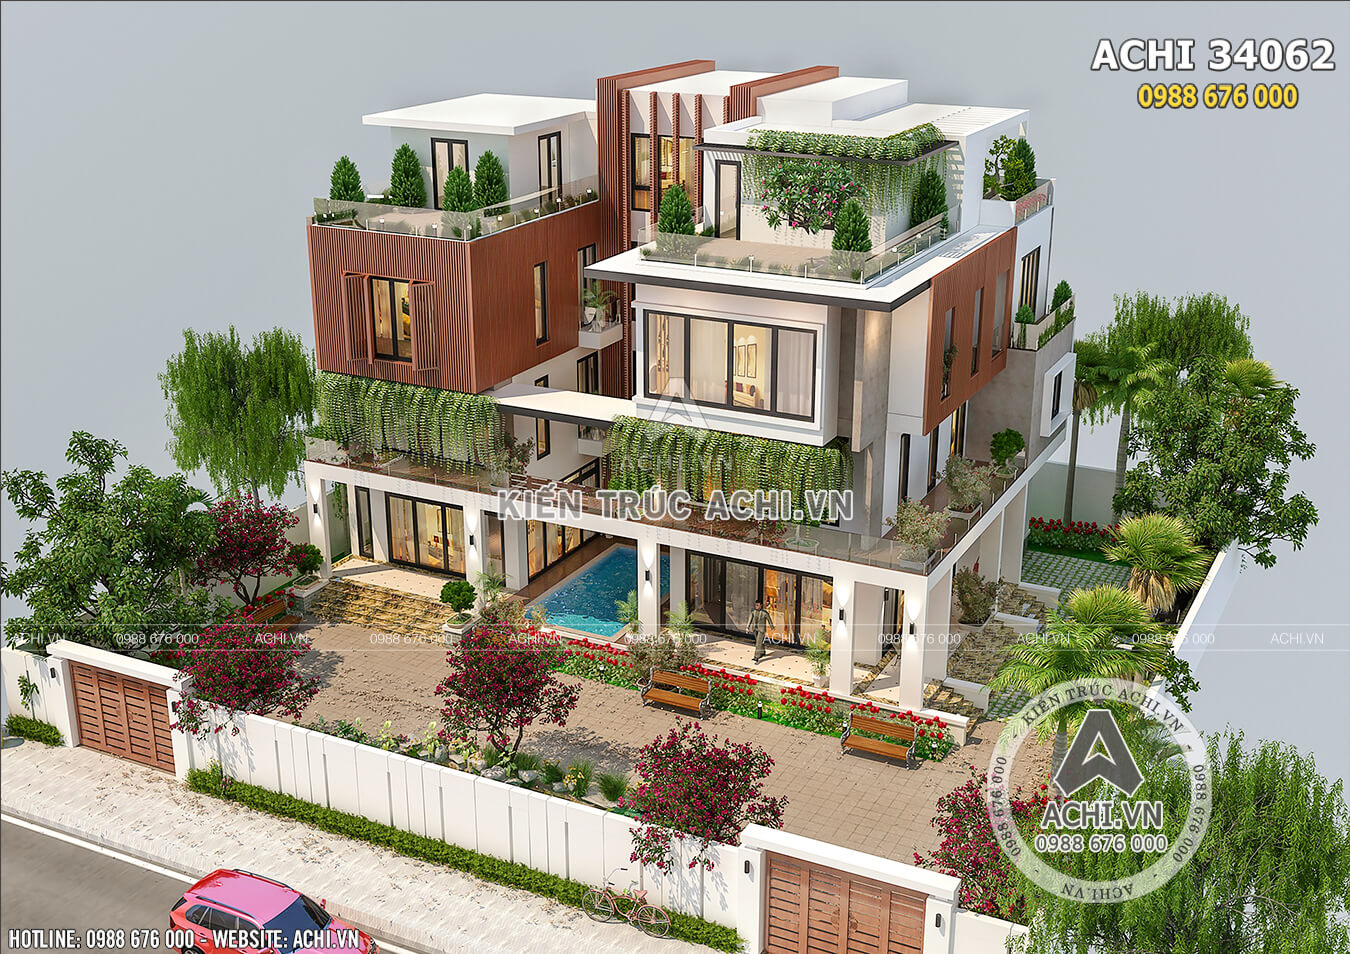 Tuyển tập những mẫu biệt thự song lập 3 tầng đẹp, hiện đại và cuốn hút -  WEDO - Công ty Thiết kế Thi công xây dựng chuyên nghiệp hàng đầu Việt Nam